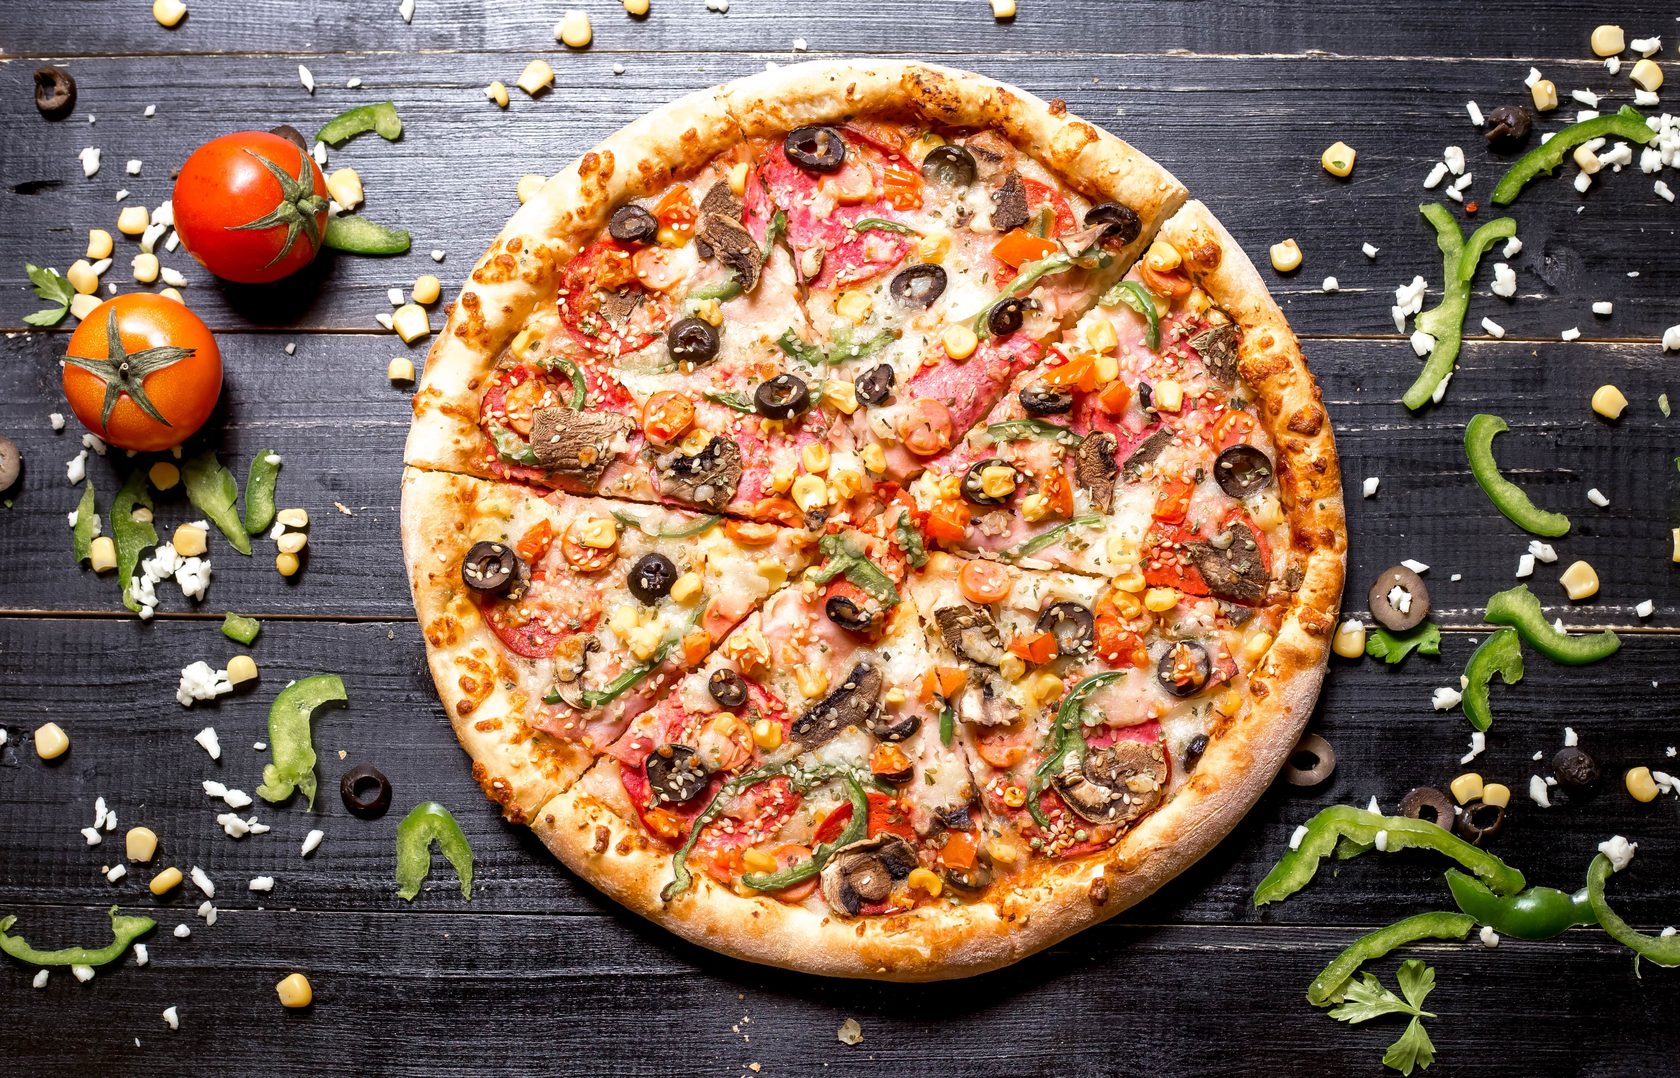 я хочу пиццу песто с пепперони и сосисками так же хочу другую с оливками фото 118